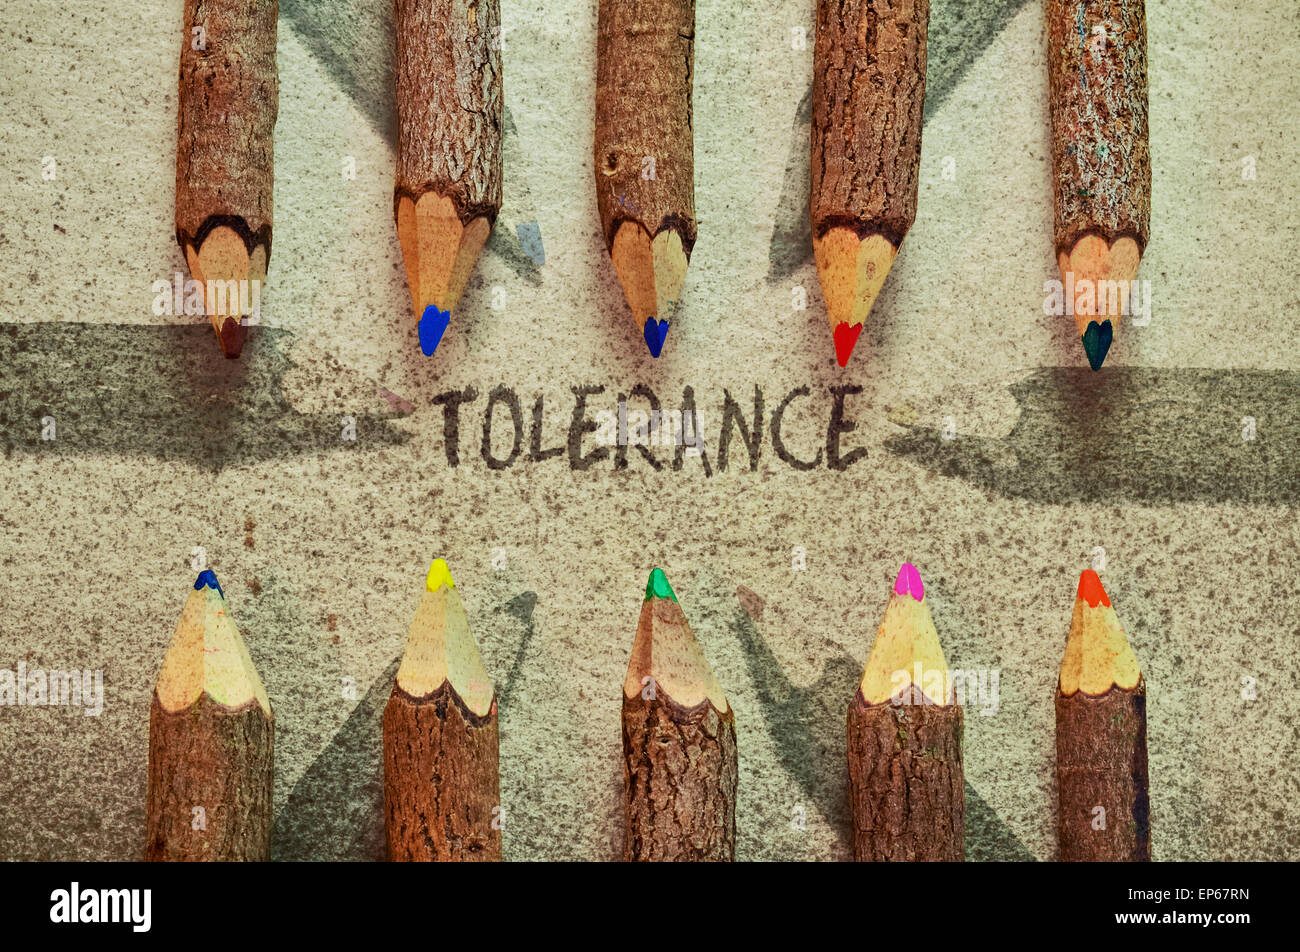 Immagine concettuale con matite su vintage background come un appello per la tolleranza Foto Stock